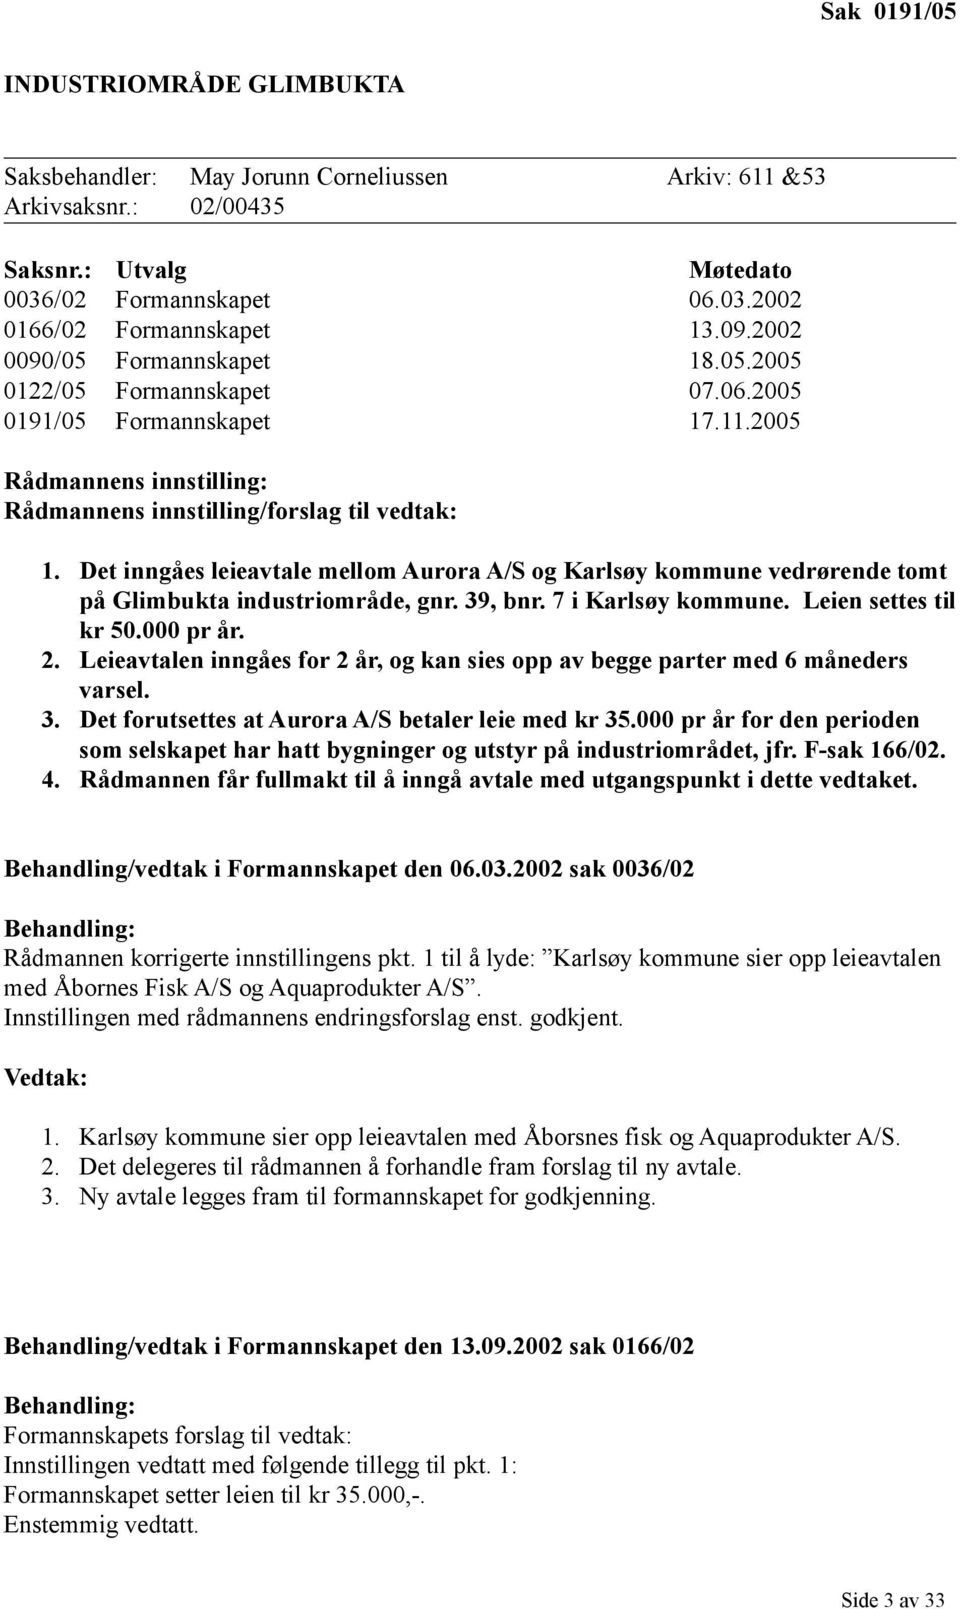 Det inngåes leieavtale mellom Aurora A/S og Karlsøy kommune vedrørende tomt på Glimbukta industriområde, gnr. 39, bnr. 7 i Karlsøy kommune. Leien settes til kr 50.000 pr år. 2.